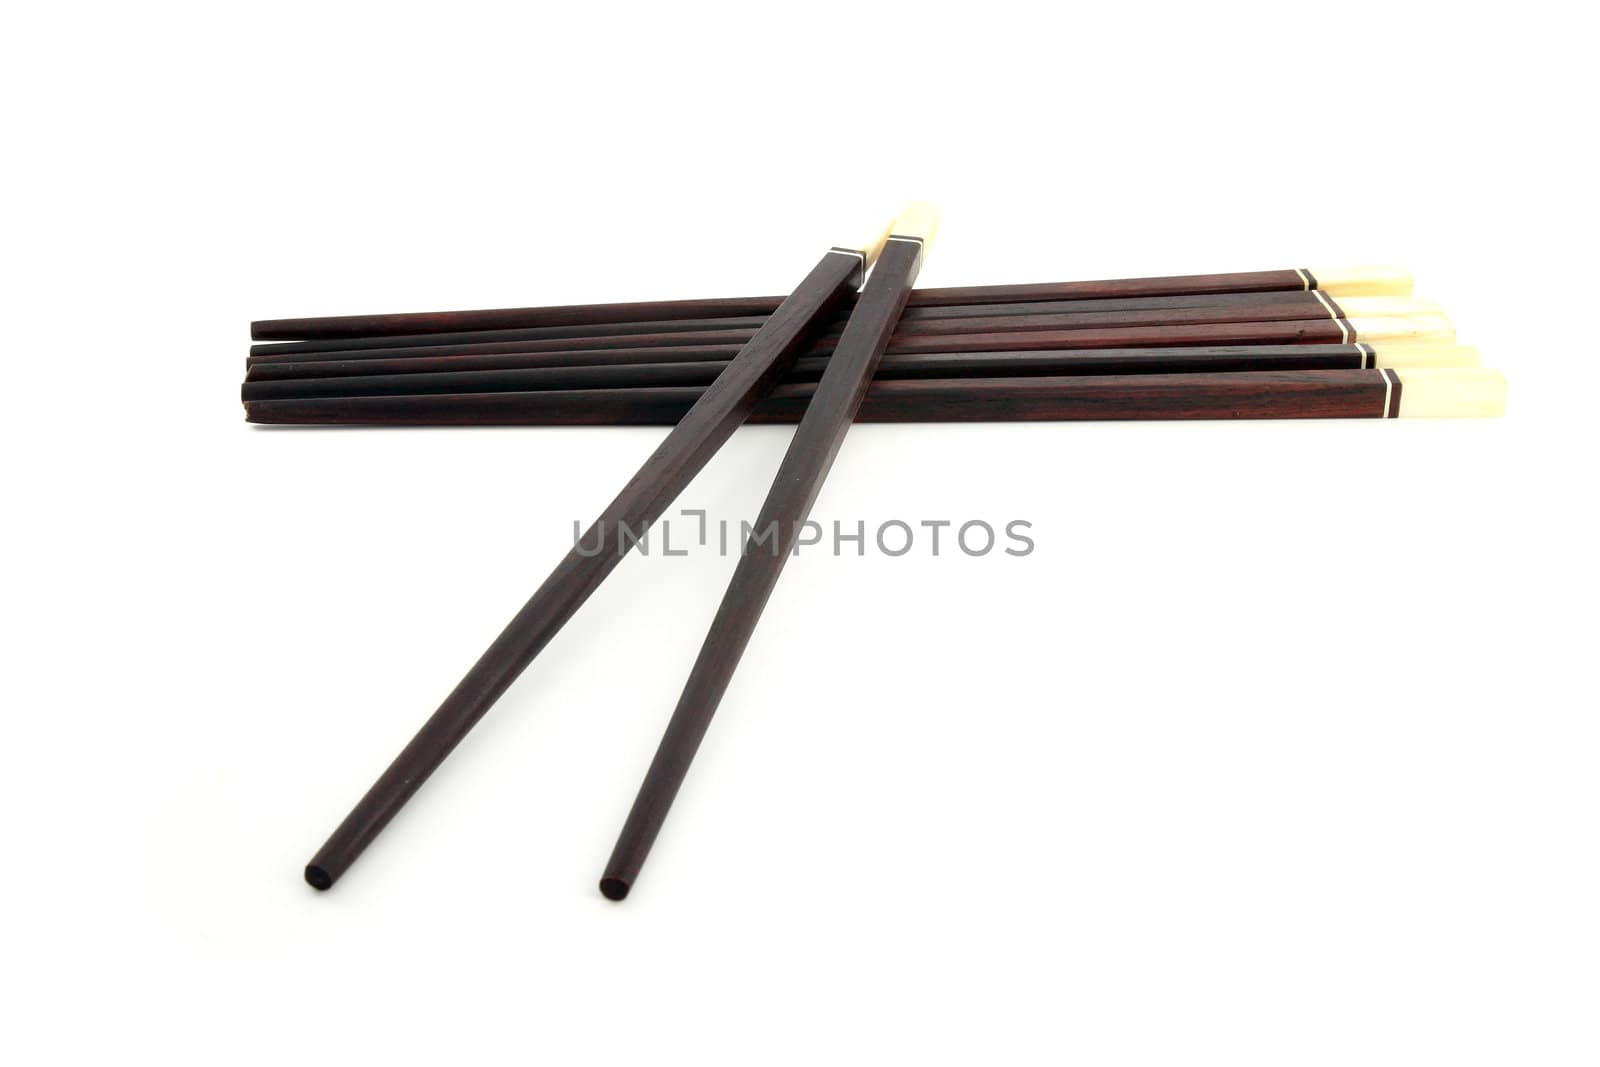 Thai wooden chopsticks on white background by geargodz